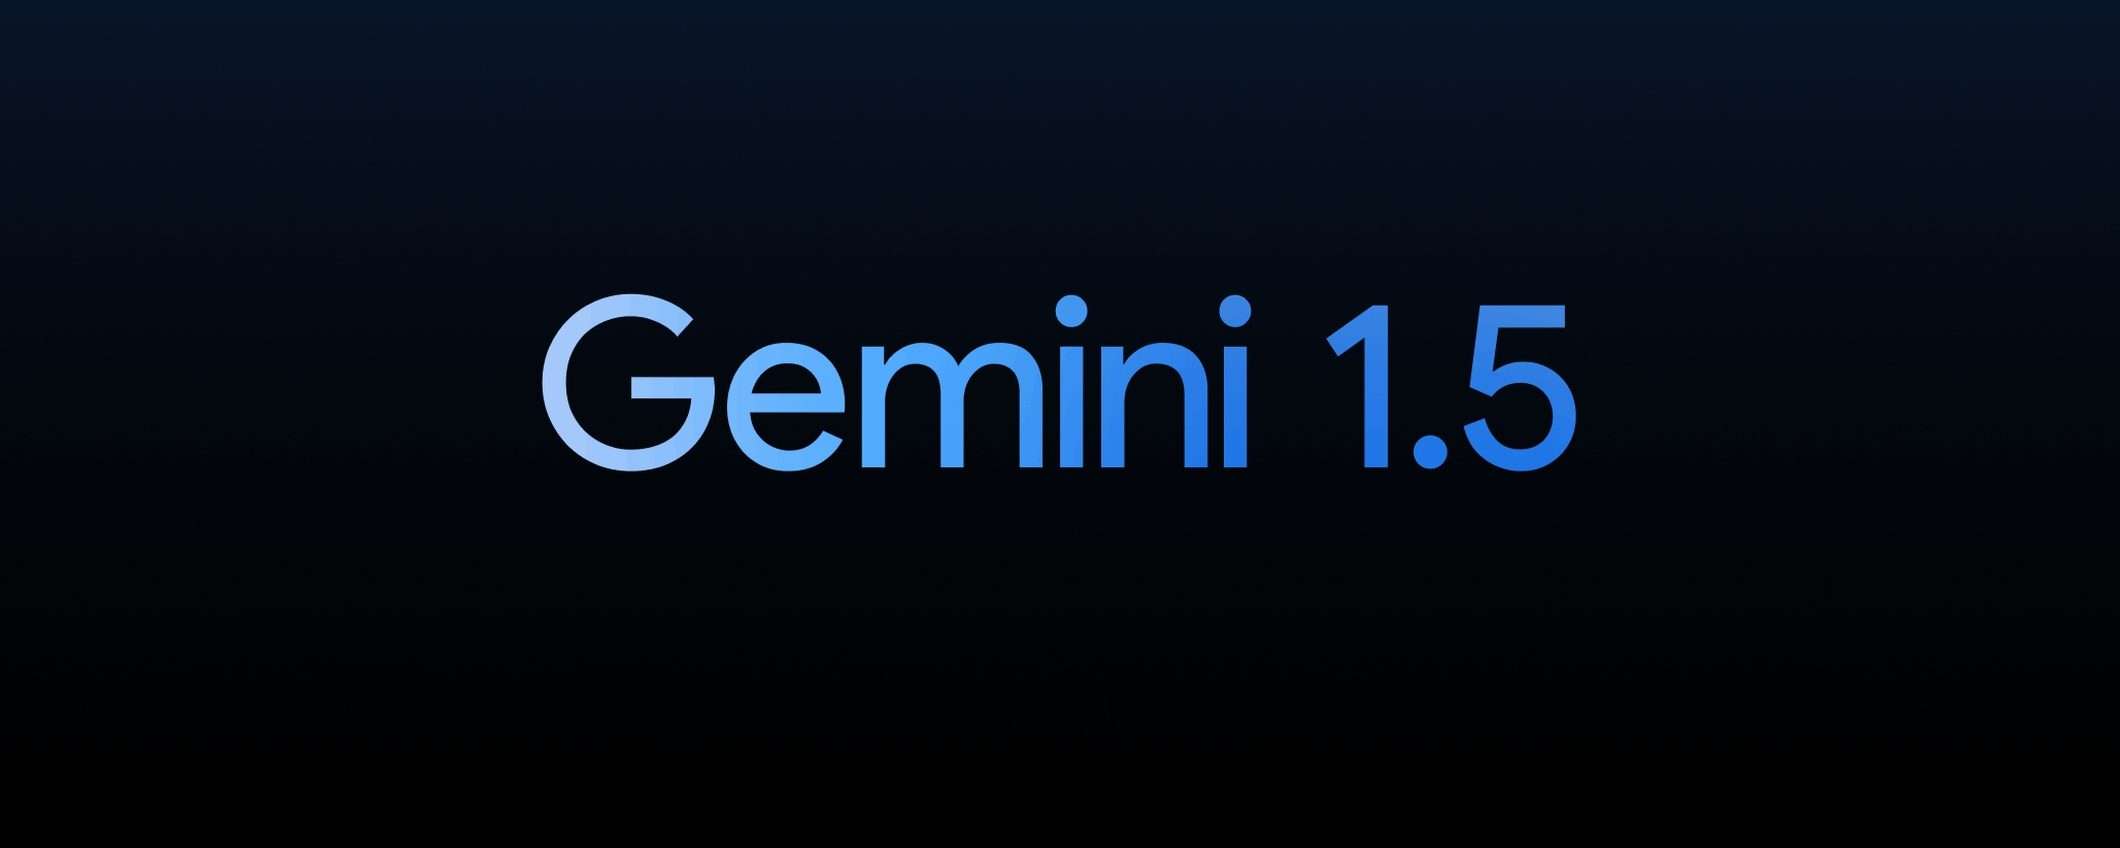 Google annuncia il nuovo modello Gemini 1.5